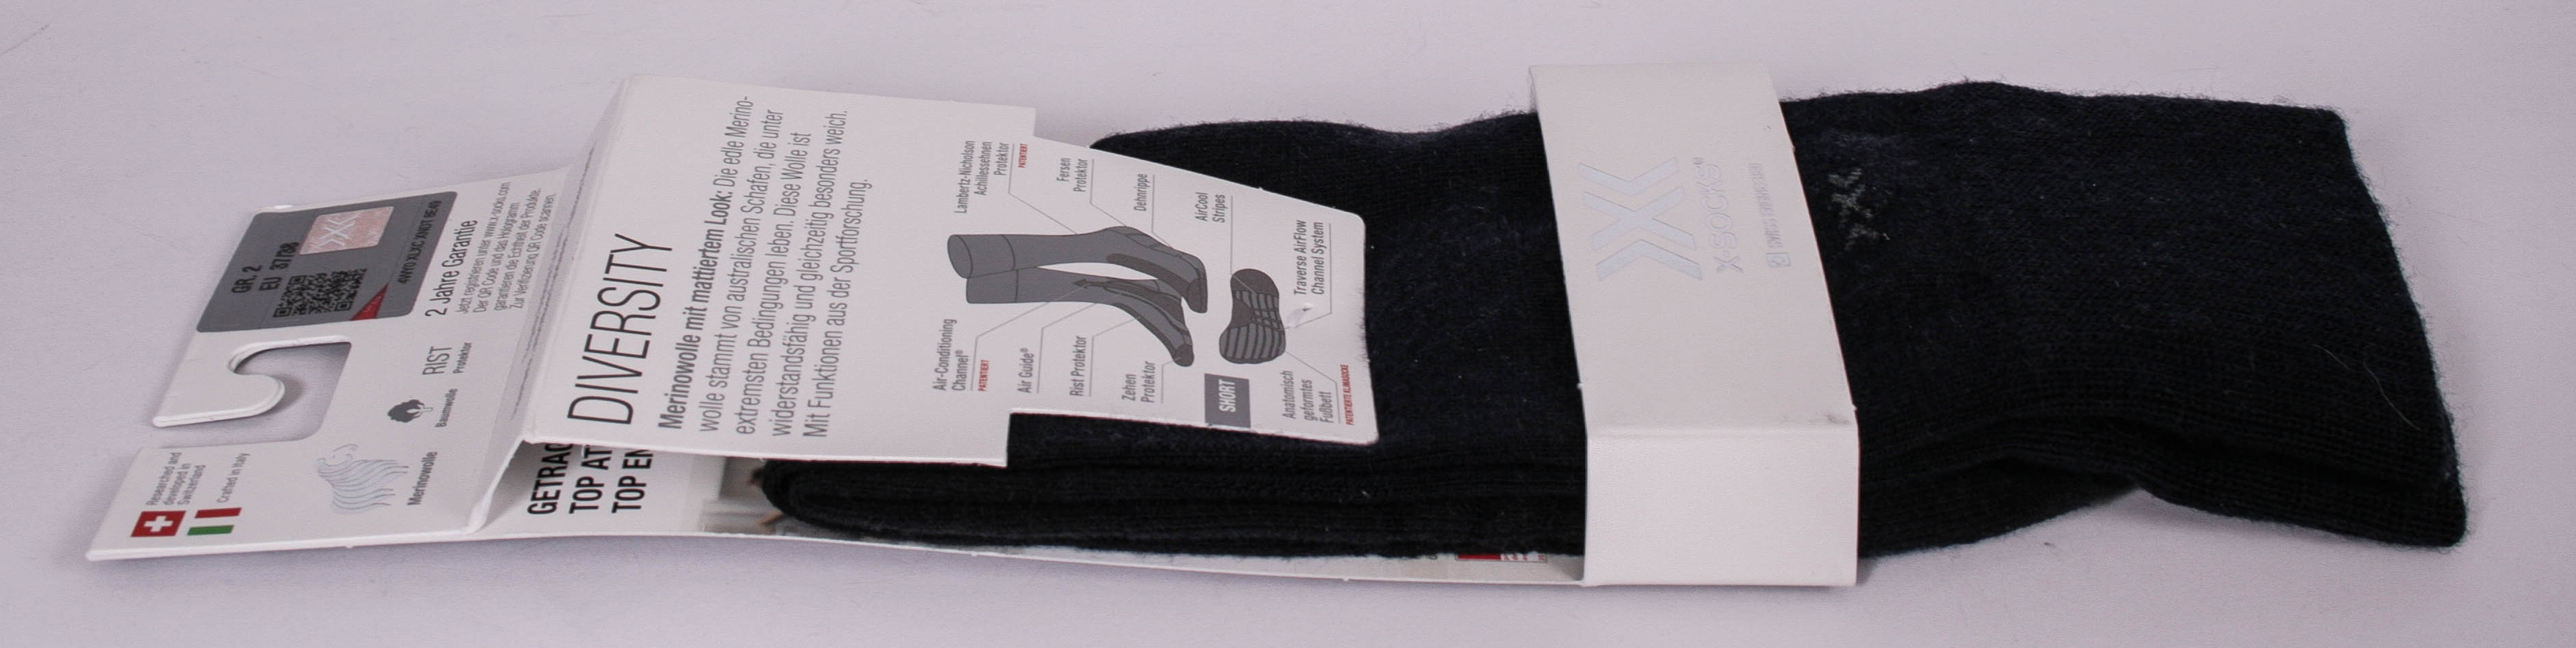 X-Socks Erwachsene Strümpfe Socken Diversity Gr. 2 / 37-38